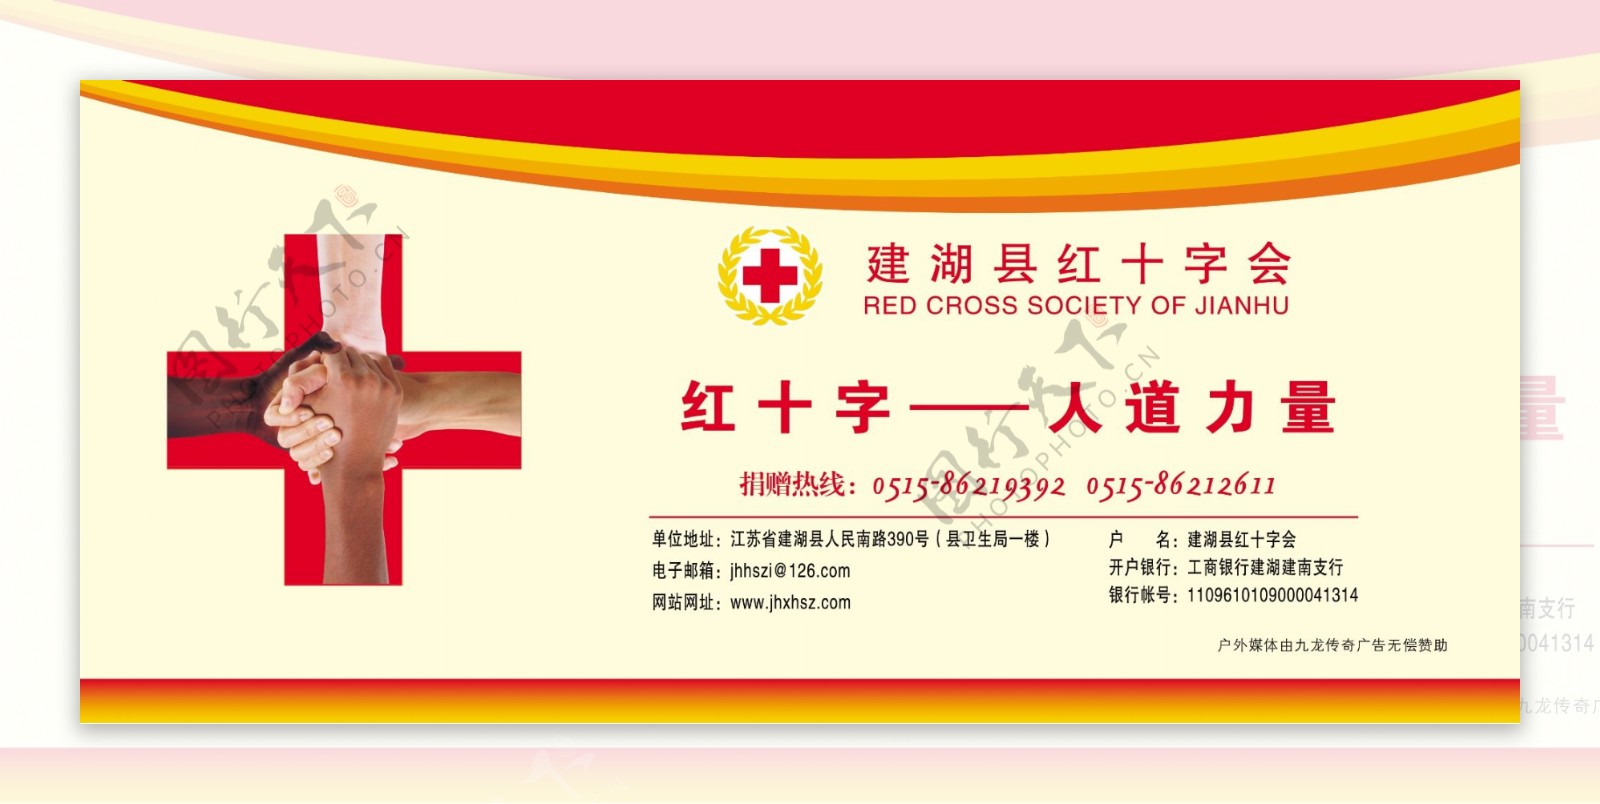 红十字会公益广告图片